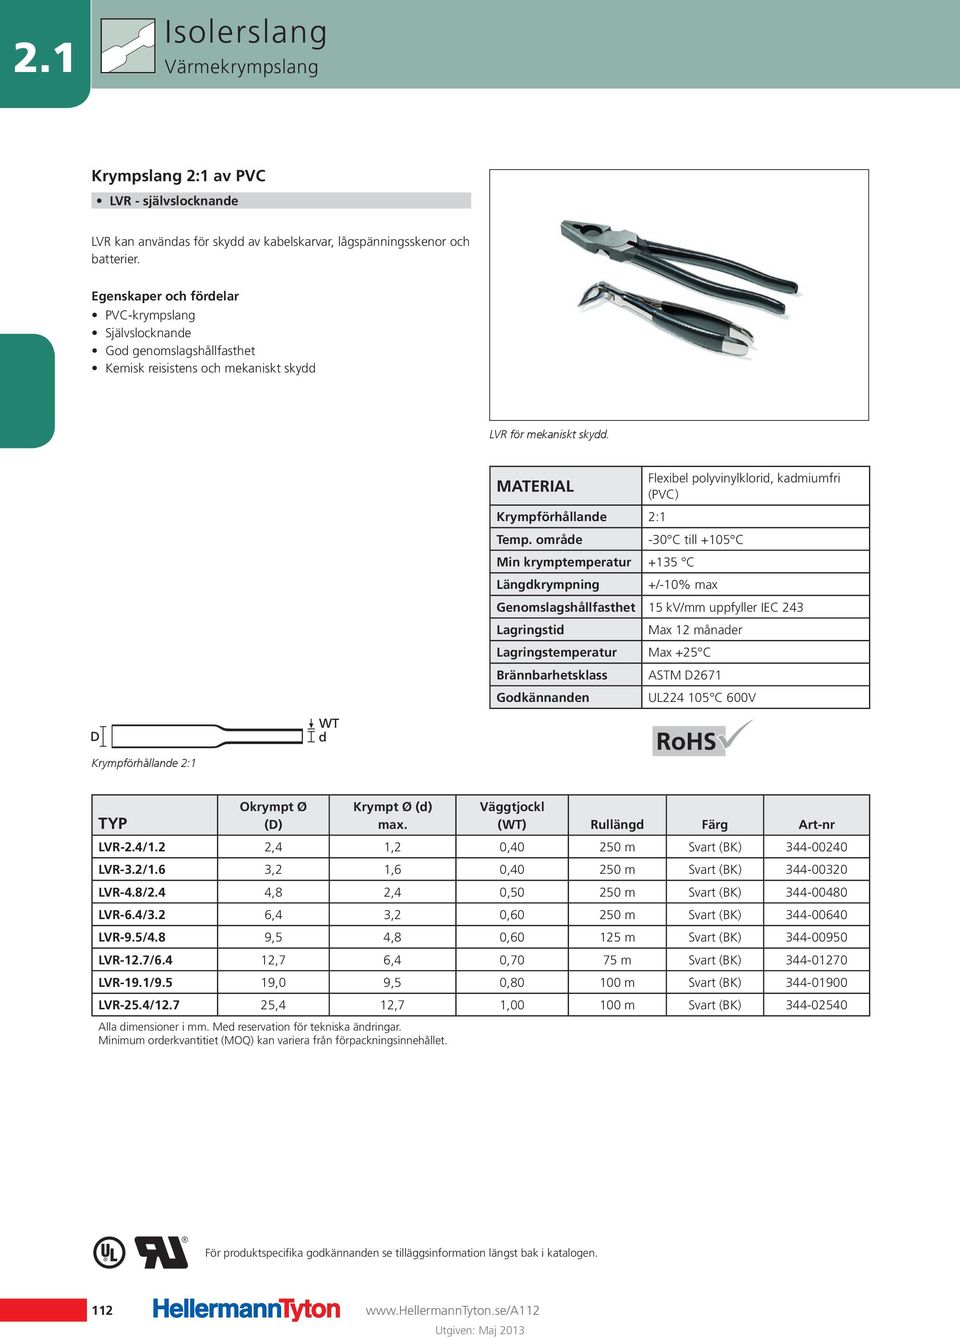 Flexibel polyvinylklorid, kadmiumfri (PVC) Krympförhållande 2:1-30 C till +105 C Min krymptemperatur +135 C Längdkrympning +/-10% max Genomslagshållfasthet 15 kv/mm uppfyller IEC 243 Lagringstid Max